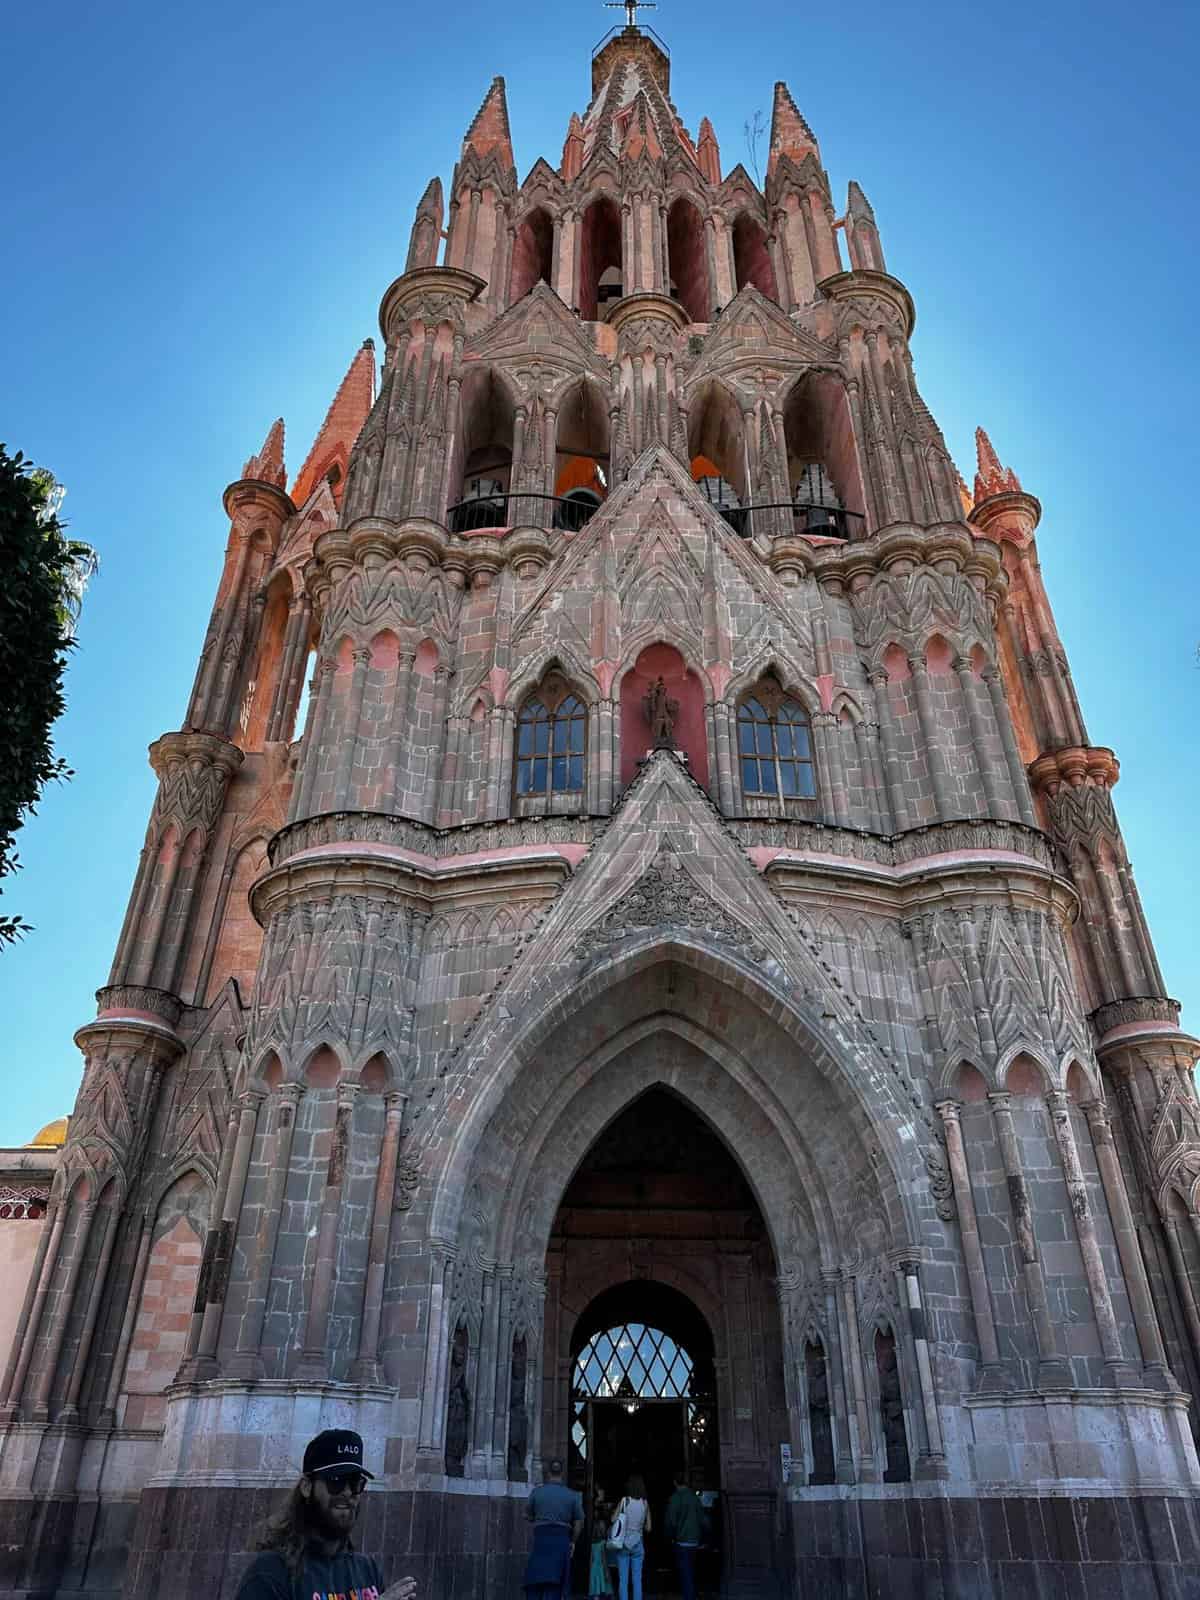 San Miguel de Allende Travel Guide